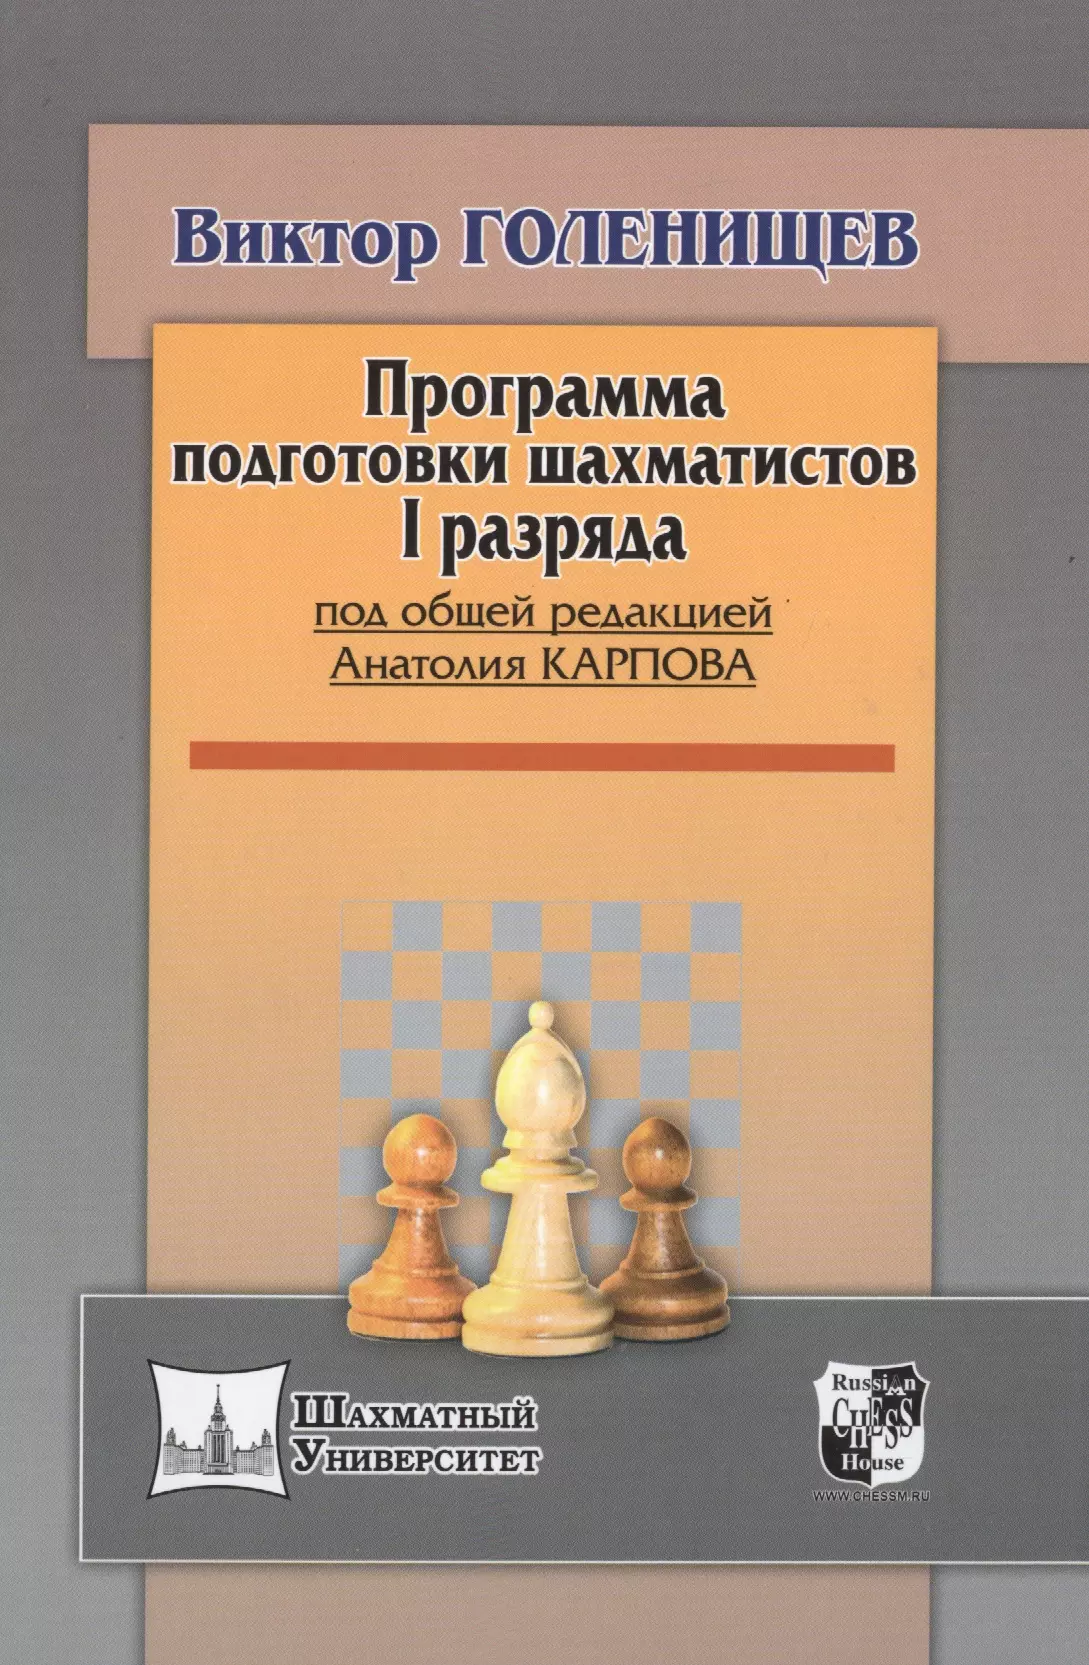 программа подготовки шахматистов разрядников i разряд кмс Программа подготовки шахматистов I разряда